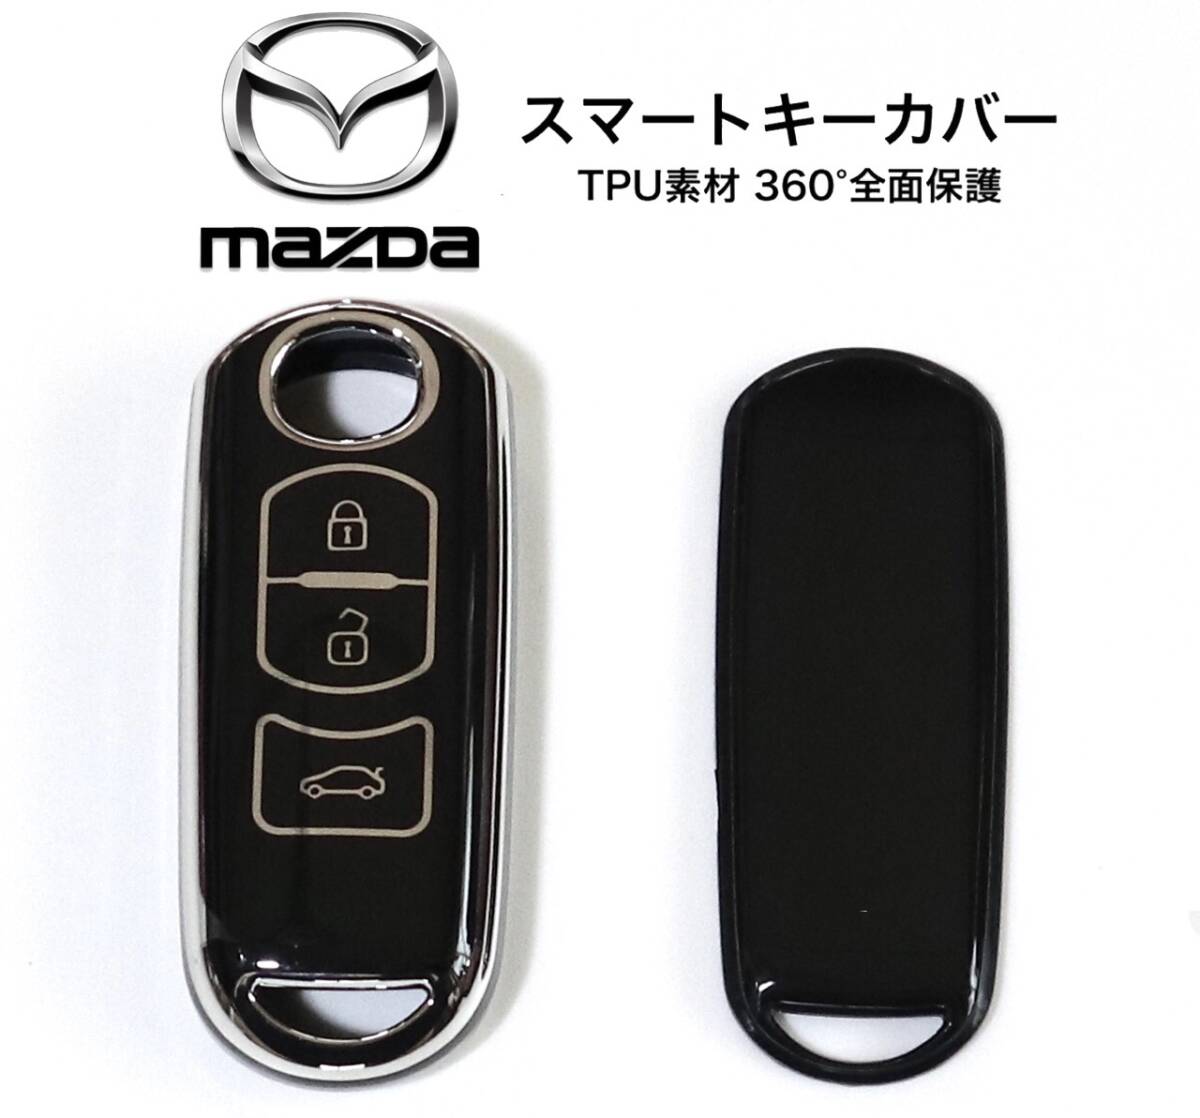 マツダ スマートキーカバー ブラック×シルバー TPU 360°全面保護 スマートキーケース CX3 CX5 CX8 MPV デミオ アテンザ アクセラ 他